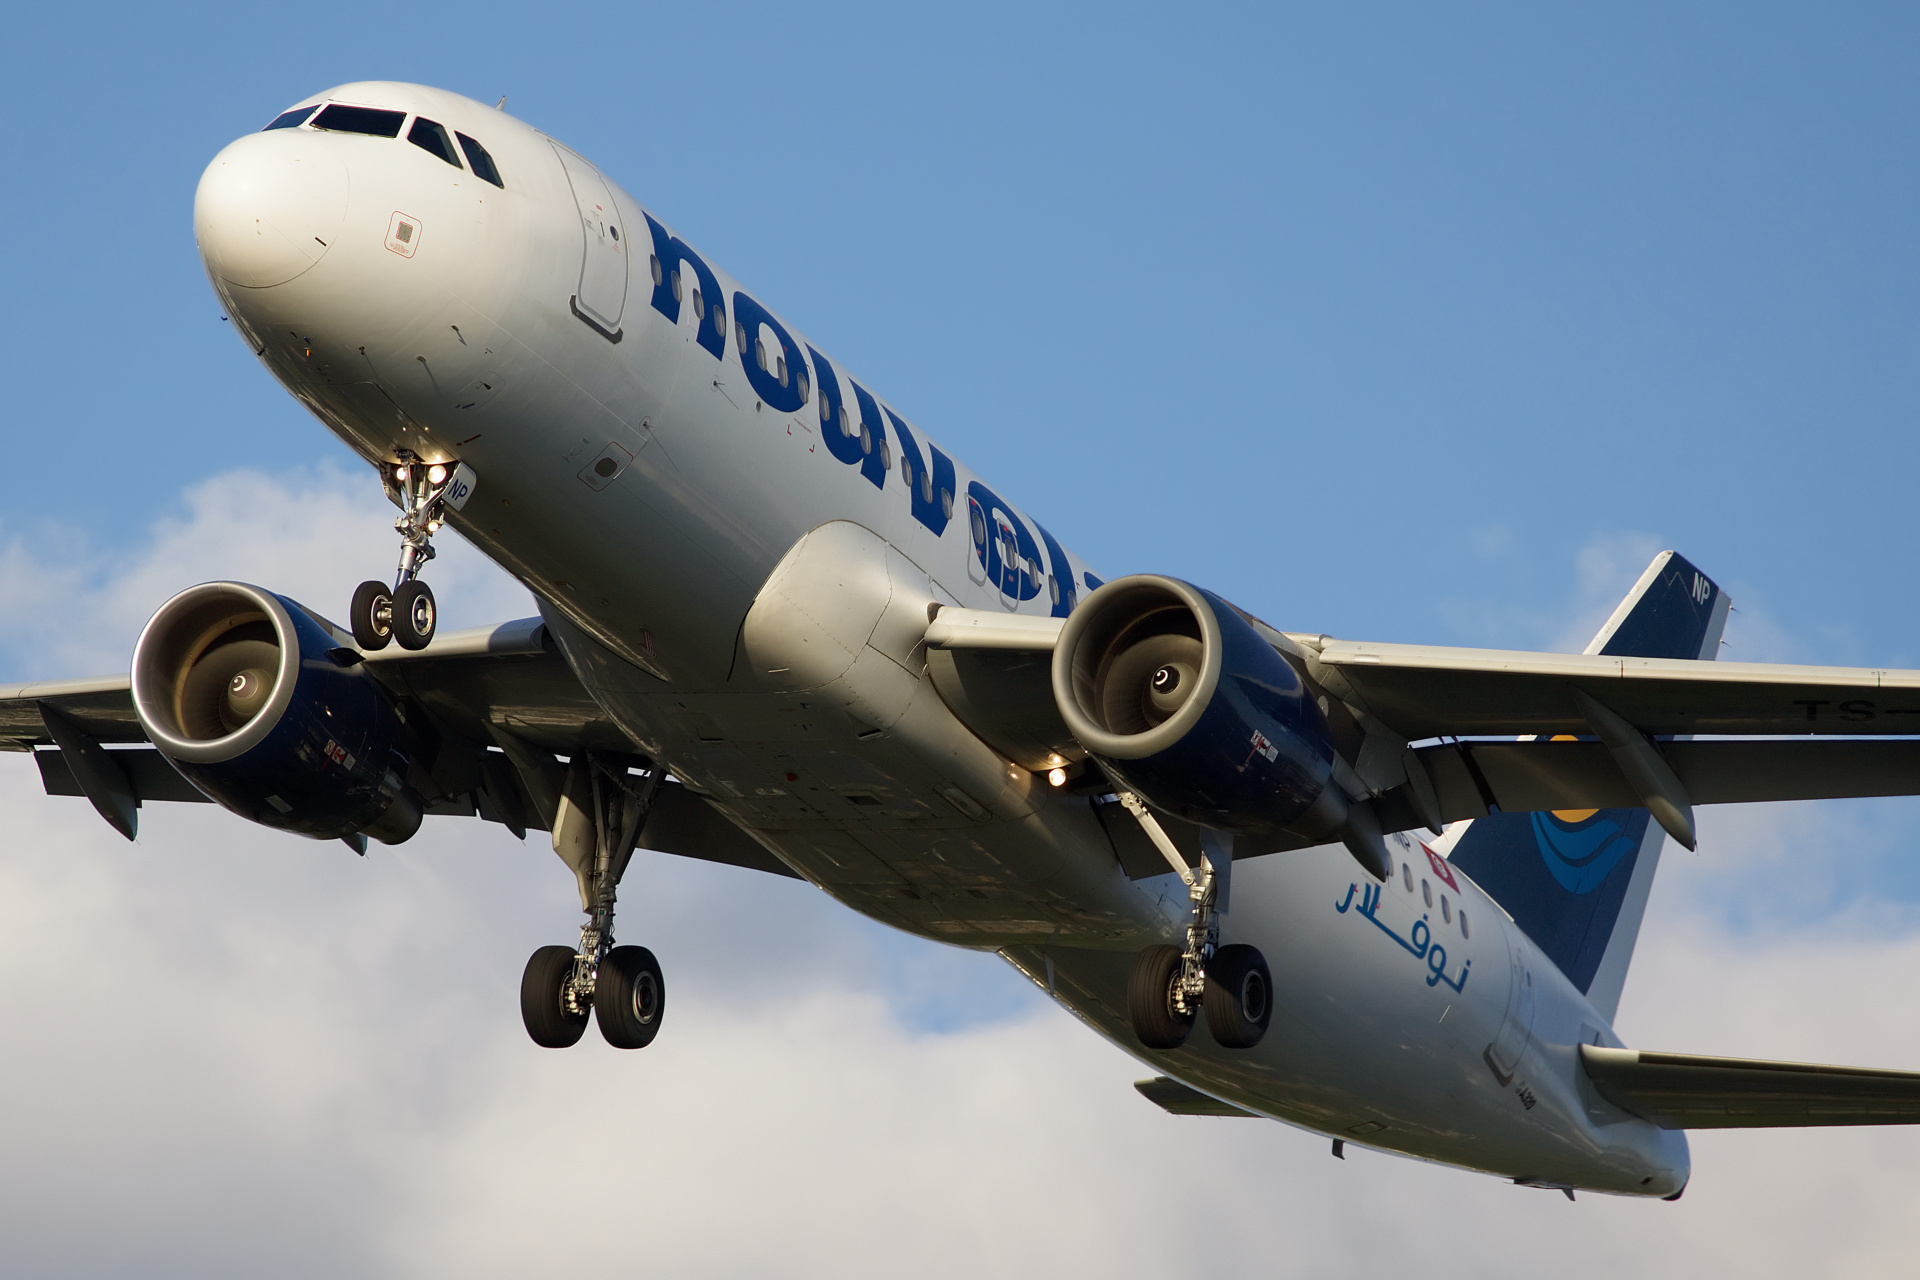 TS-INP (Samoloty » Spotting na EPWA » Airbus A320-200 » Nouvelair)